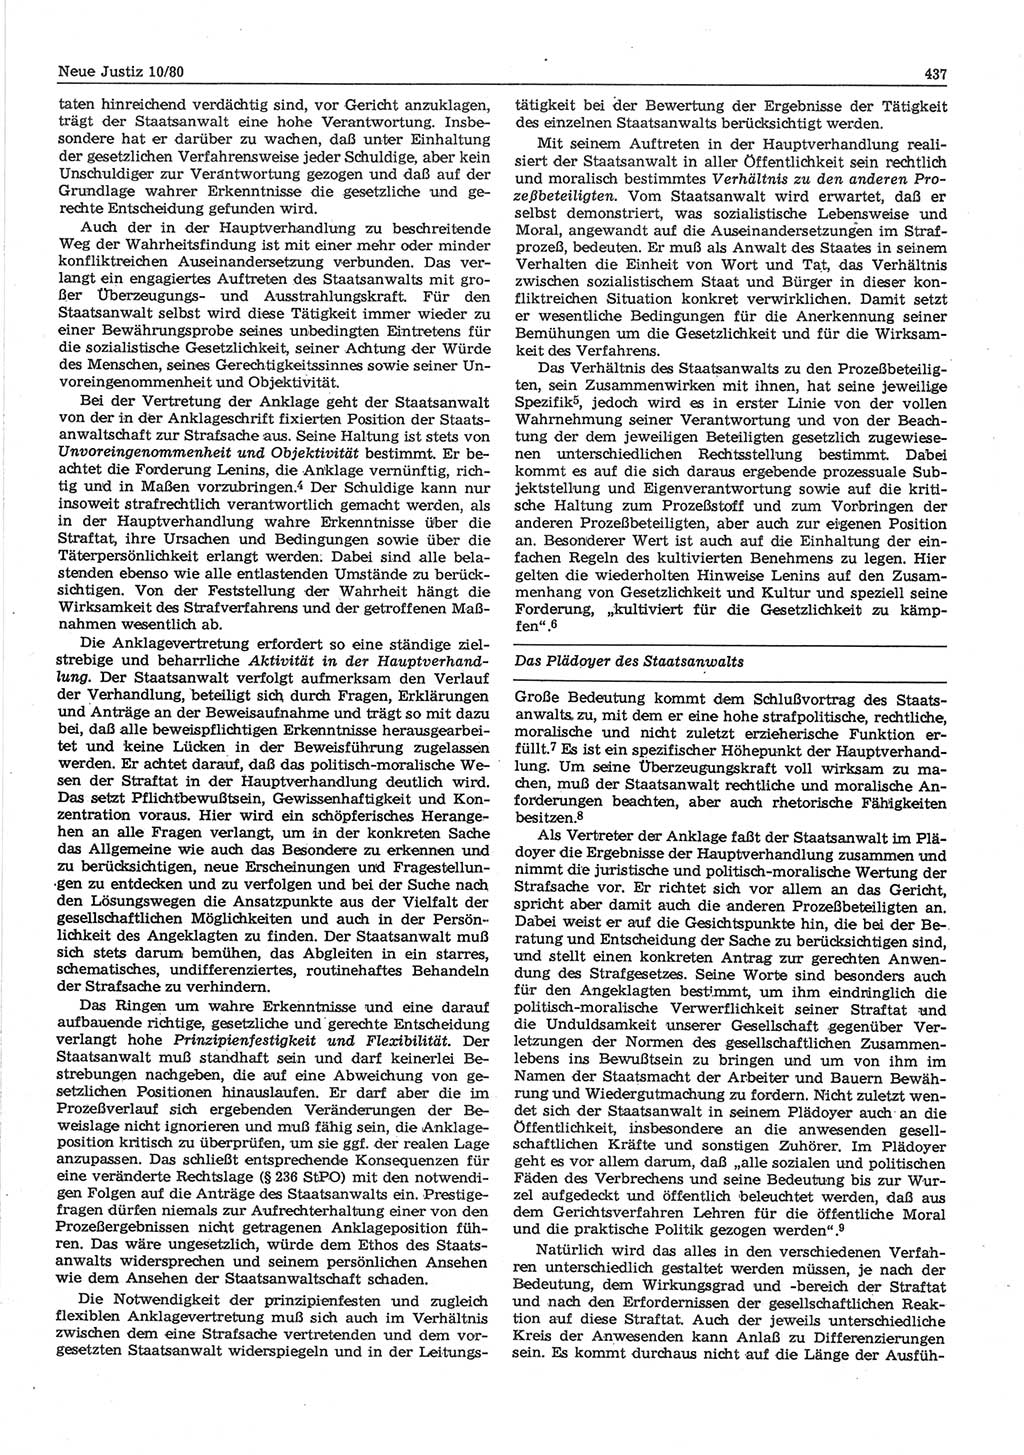 Neue Justiz (NJ), Zeitschrift für sozialistisches Recht und Gesetzlichkeit [Deutsche Demokratische Republik (DDR)], 34. Jahrgang 1980, Seite 437 (NJ DDR 1980, S. 437)